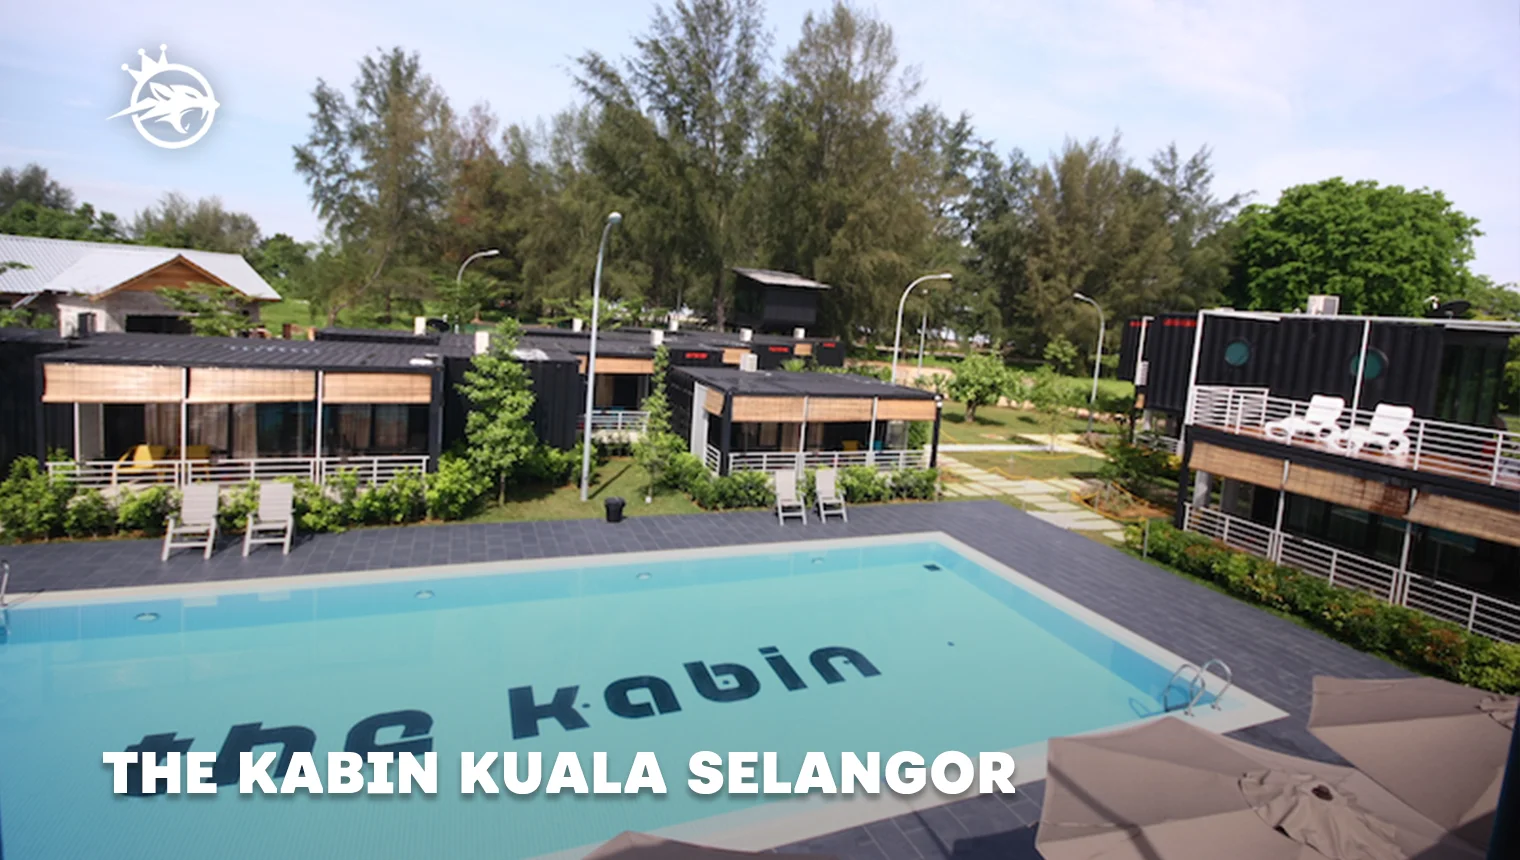 The Kabin Kuala Selangor